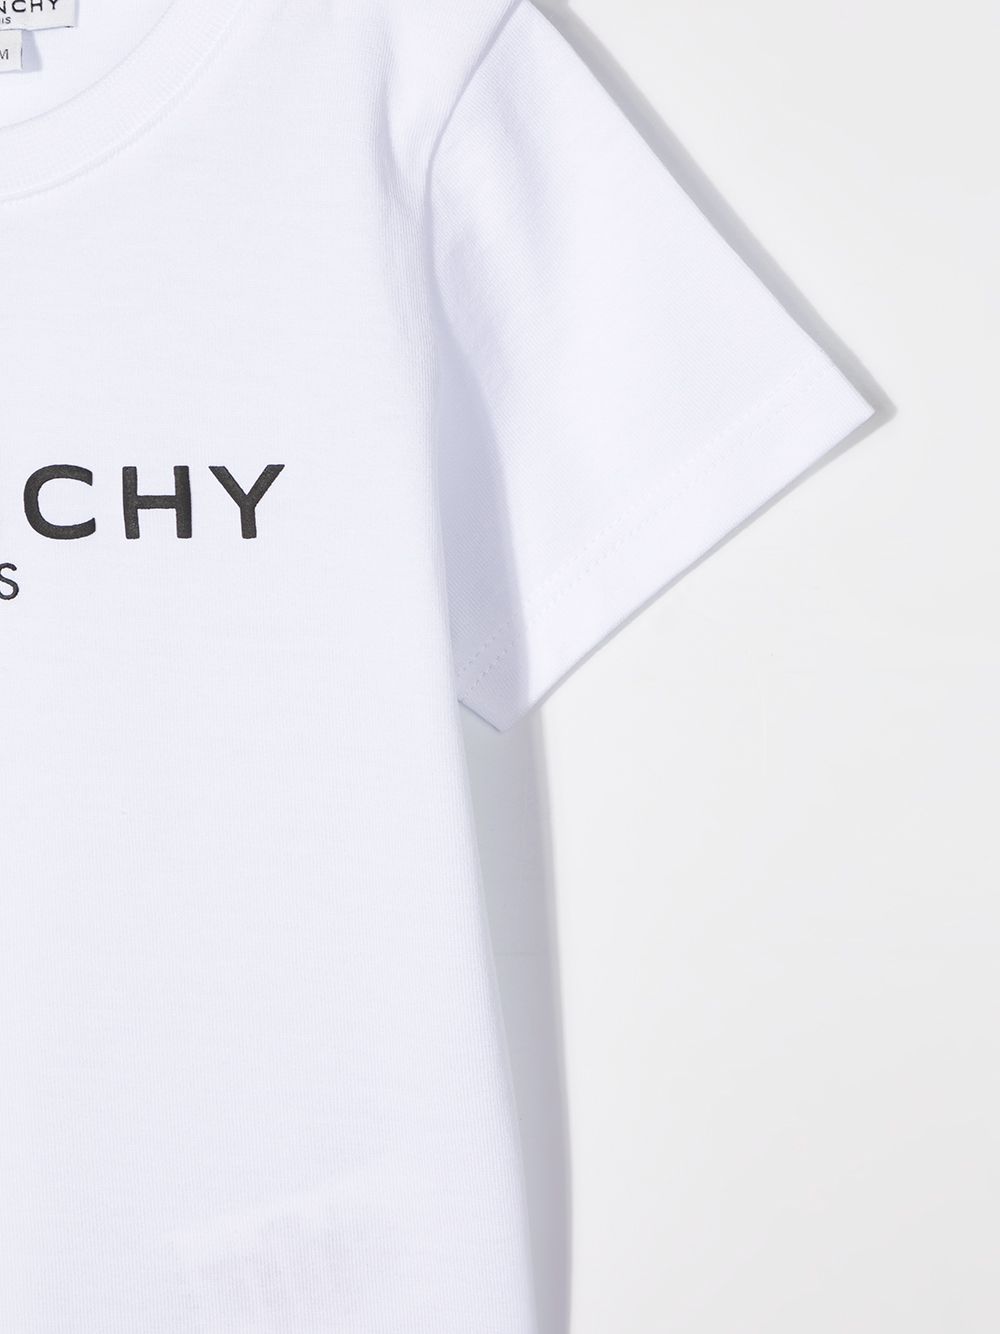 Givenchy Kids Logo Print Cotton T-shirt - Farfetch